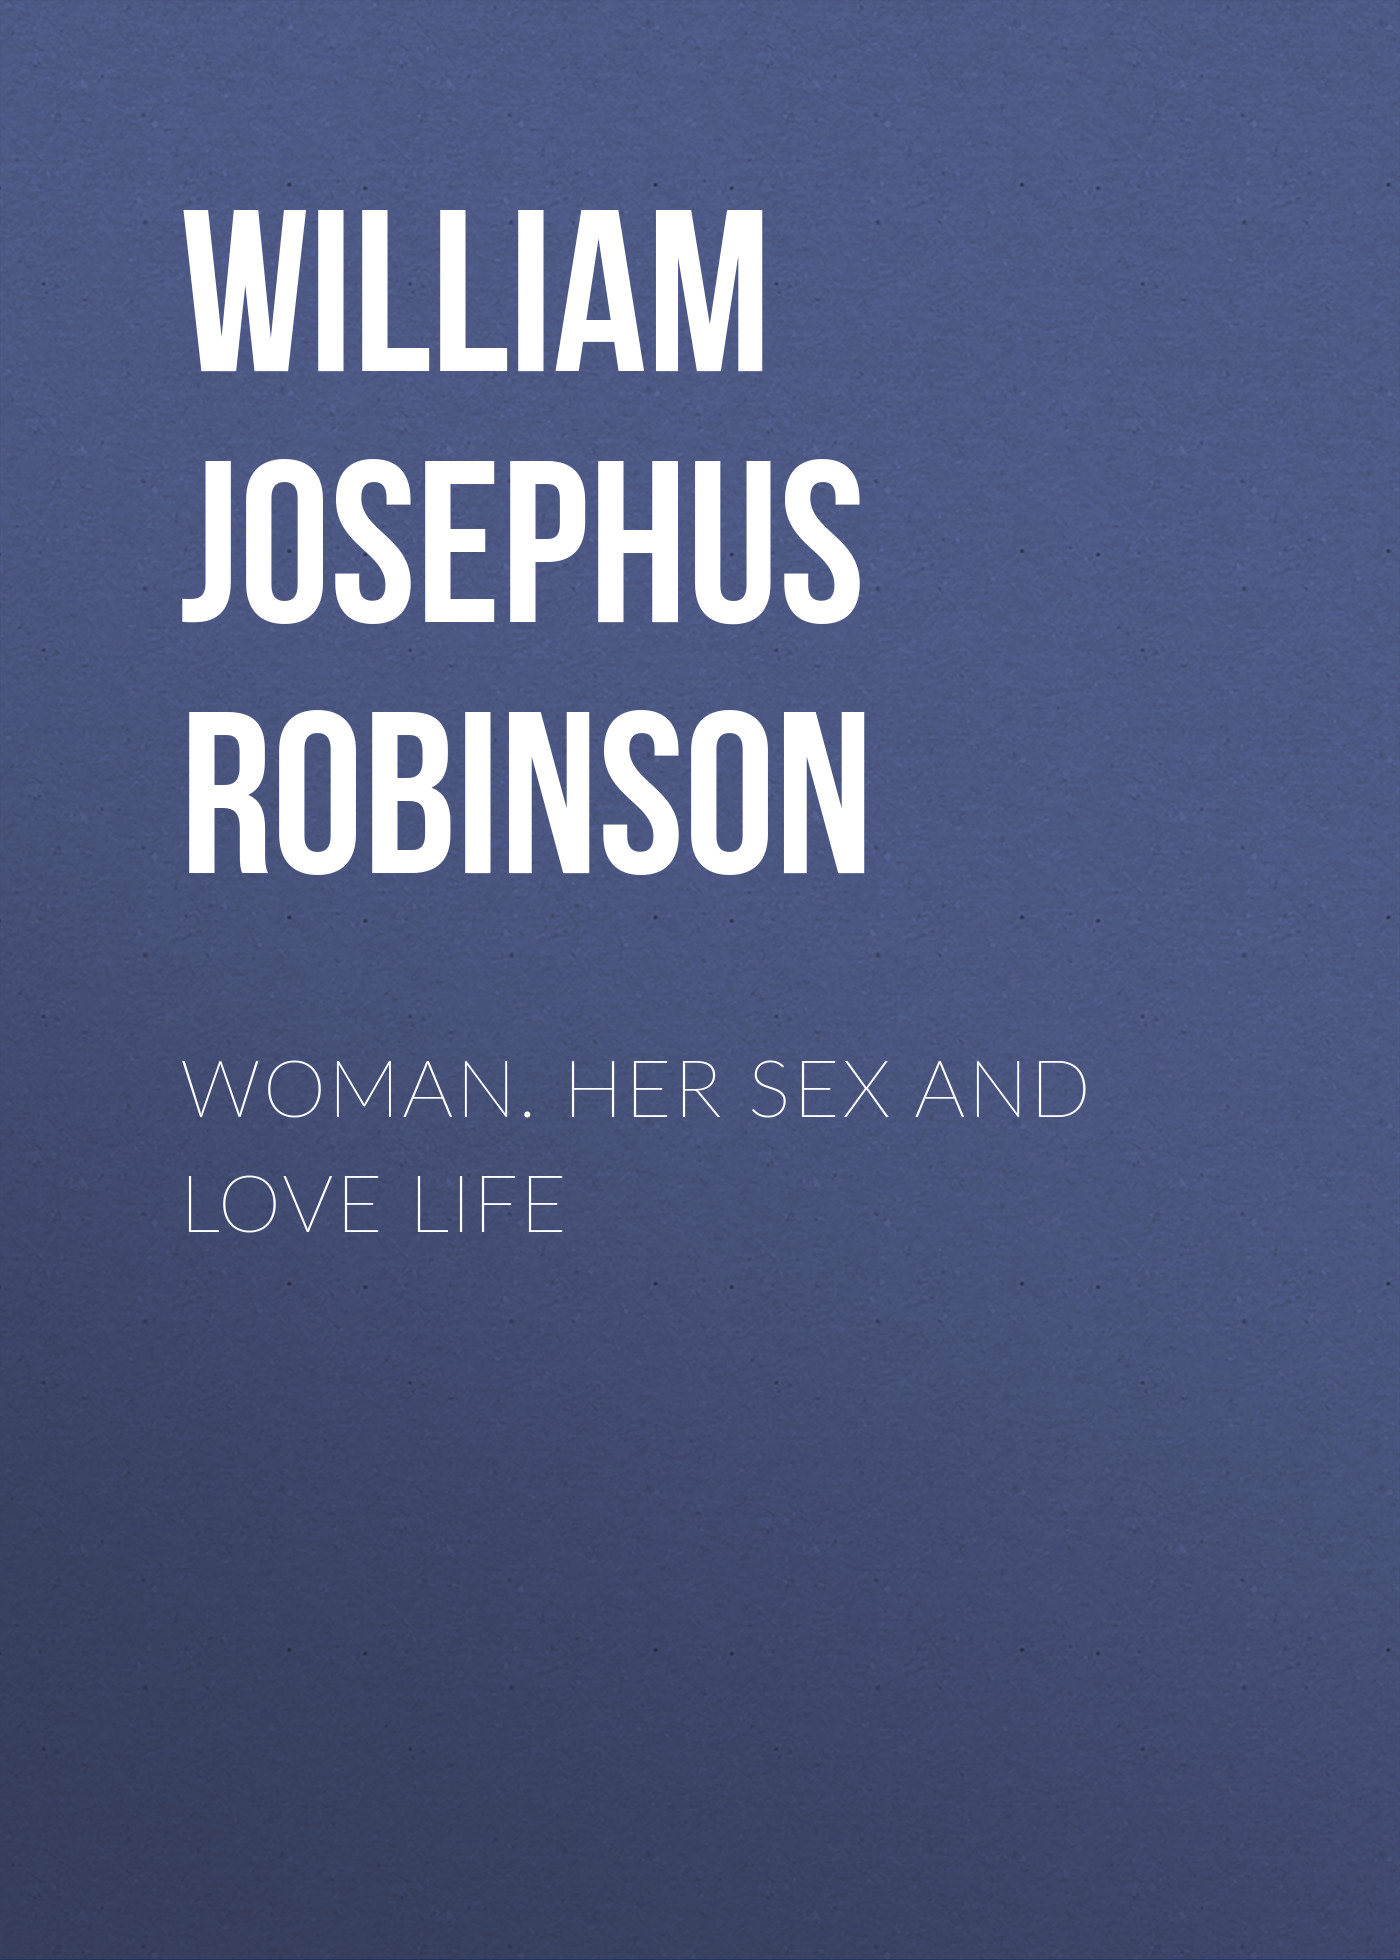 Книга Woman. Her Sex and Love Life из серии , созданная William Josephus Robinson, может относится к жанру Секс и семейная психология, Зарубежная старинная литература. Стоимость электронной книги Woman. Her Sex and Love Life с идентификатором 35507531 составляет 0 руб.